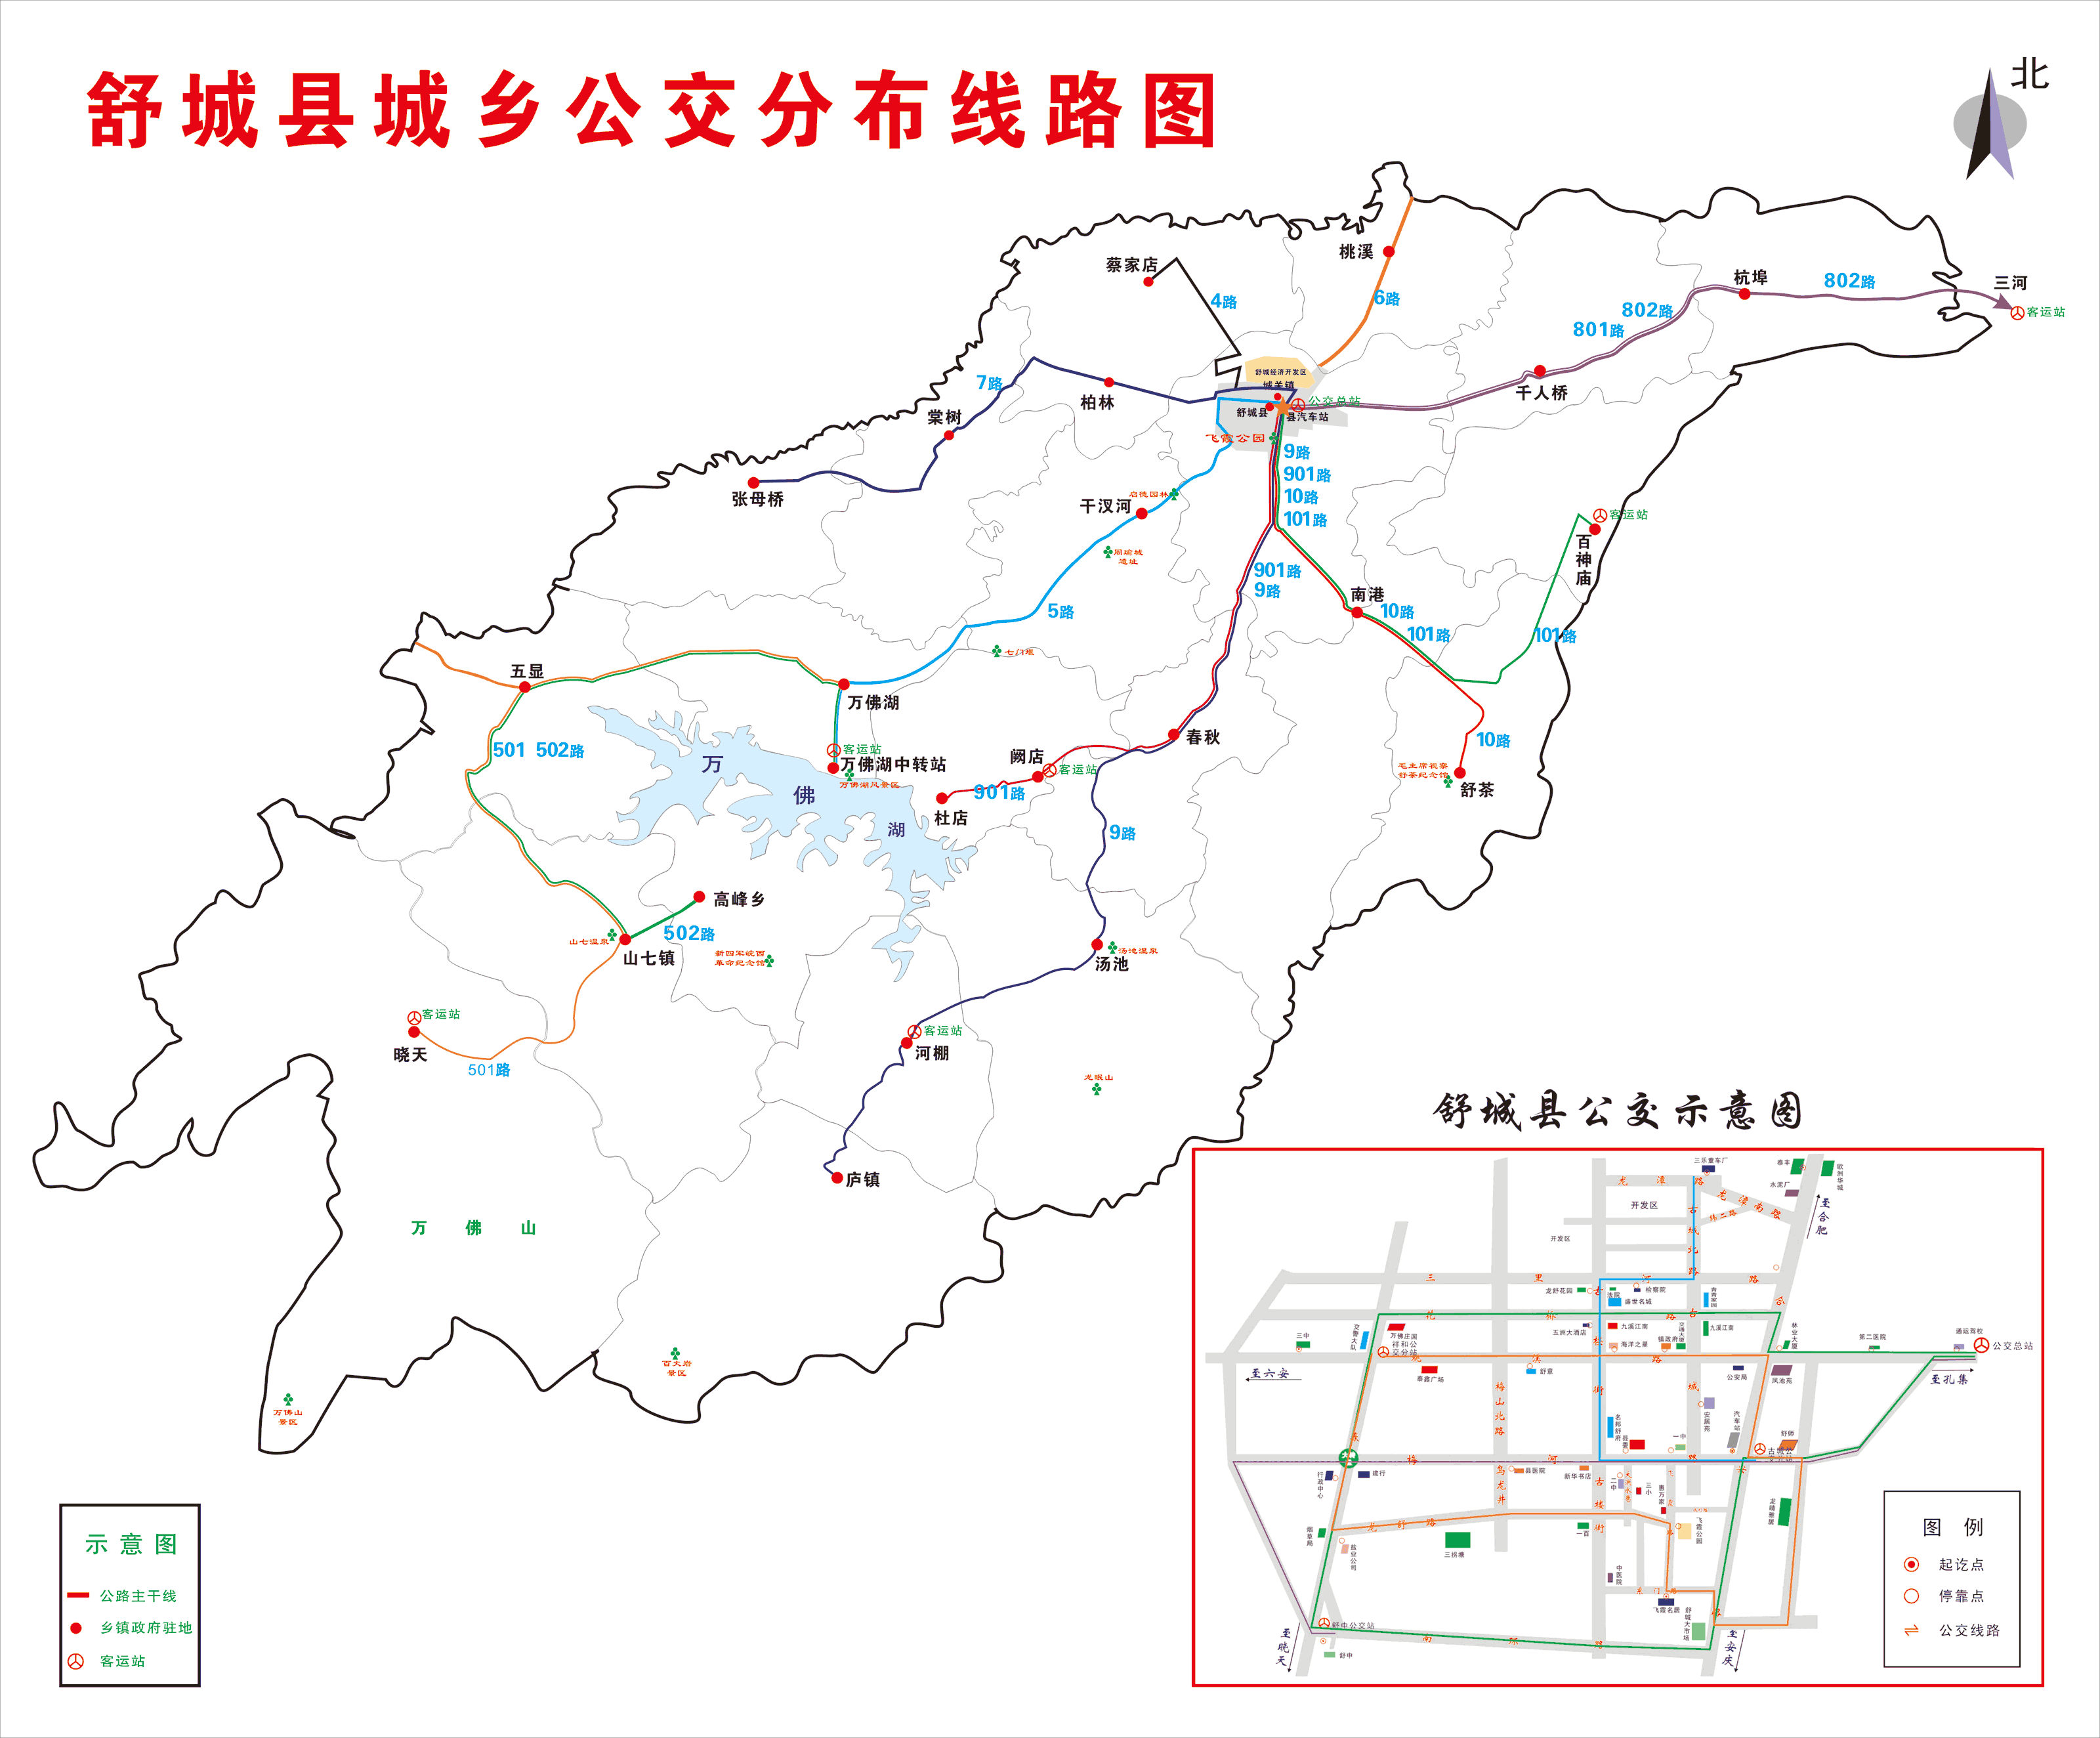 舒城县干汊河镇美丽乡村建设规划（2018-2040年）_舒城县人民政府